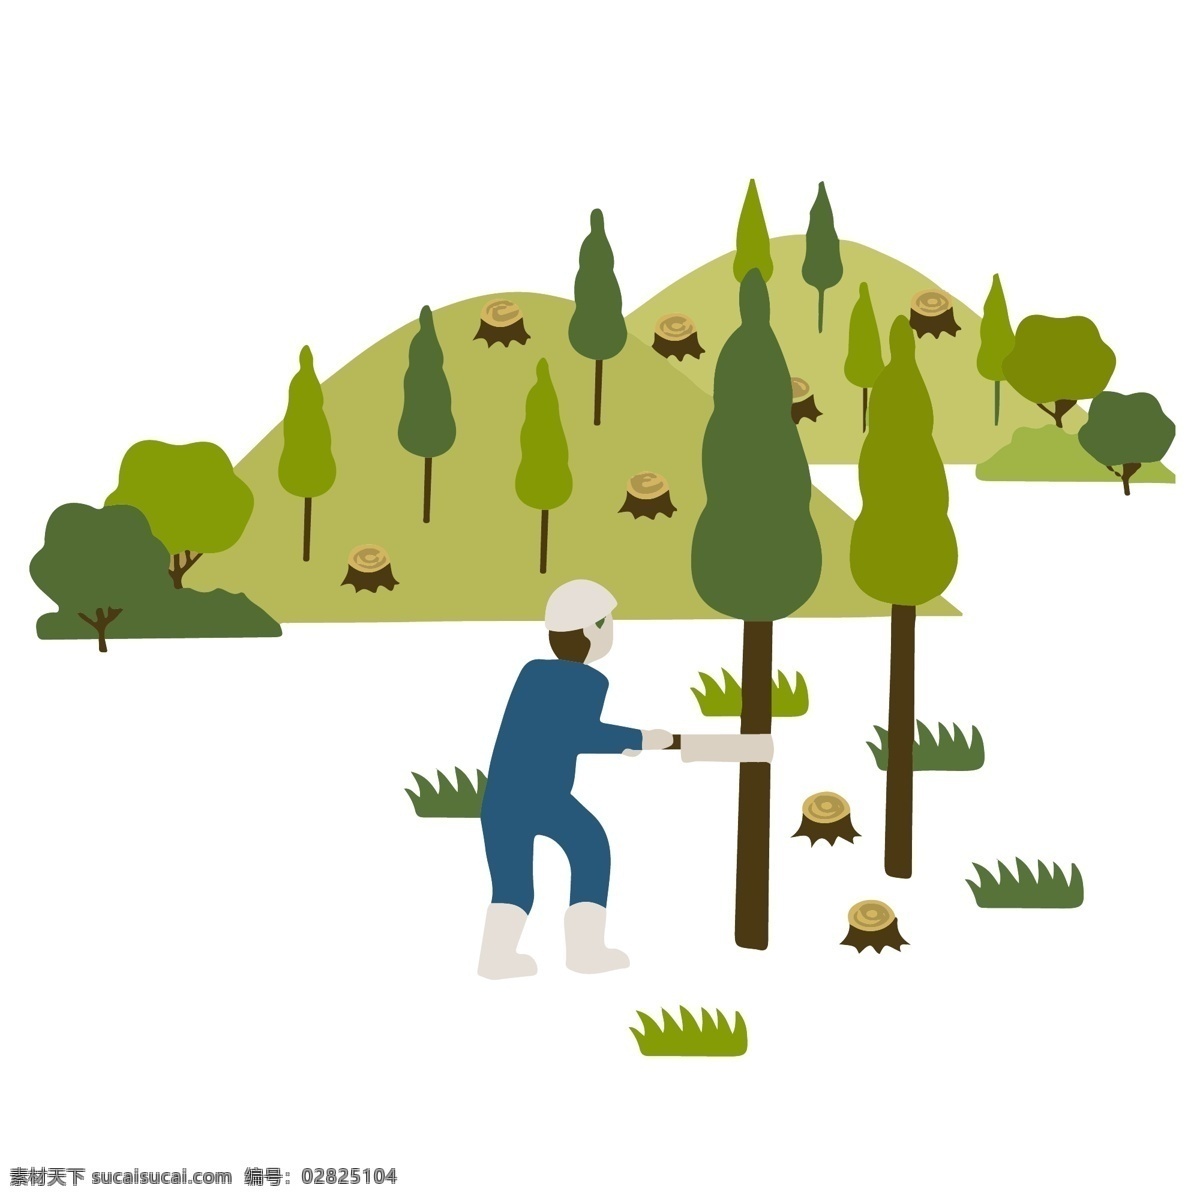 植物 游玩 儿童 保护 环境 类 人物 插画 系列 套 图 森林 可爱 保护环境 植树 砍树 伐木 爱护环境 扁平